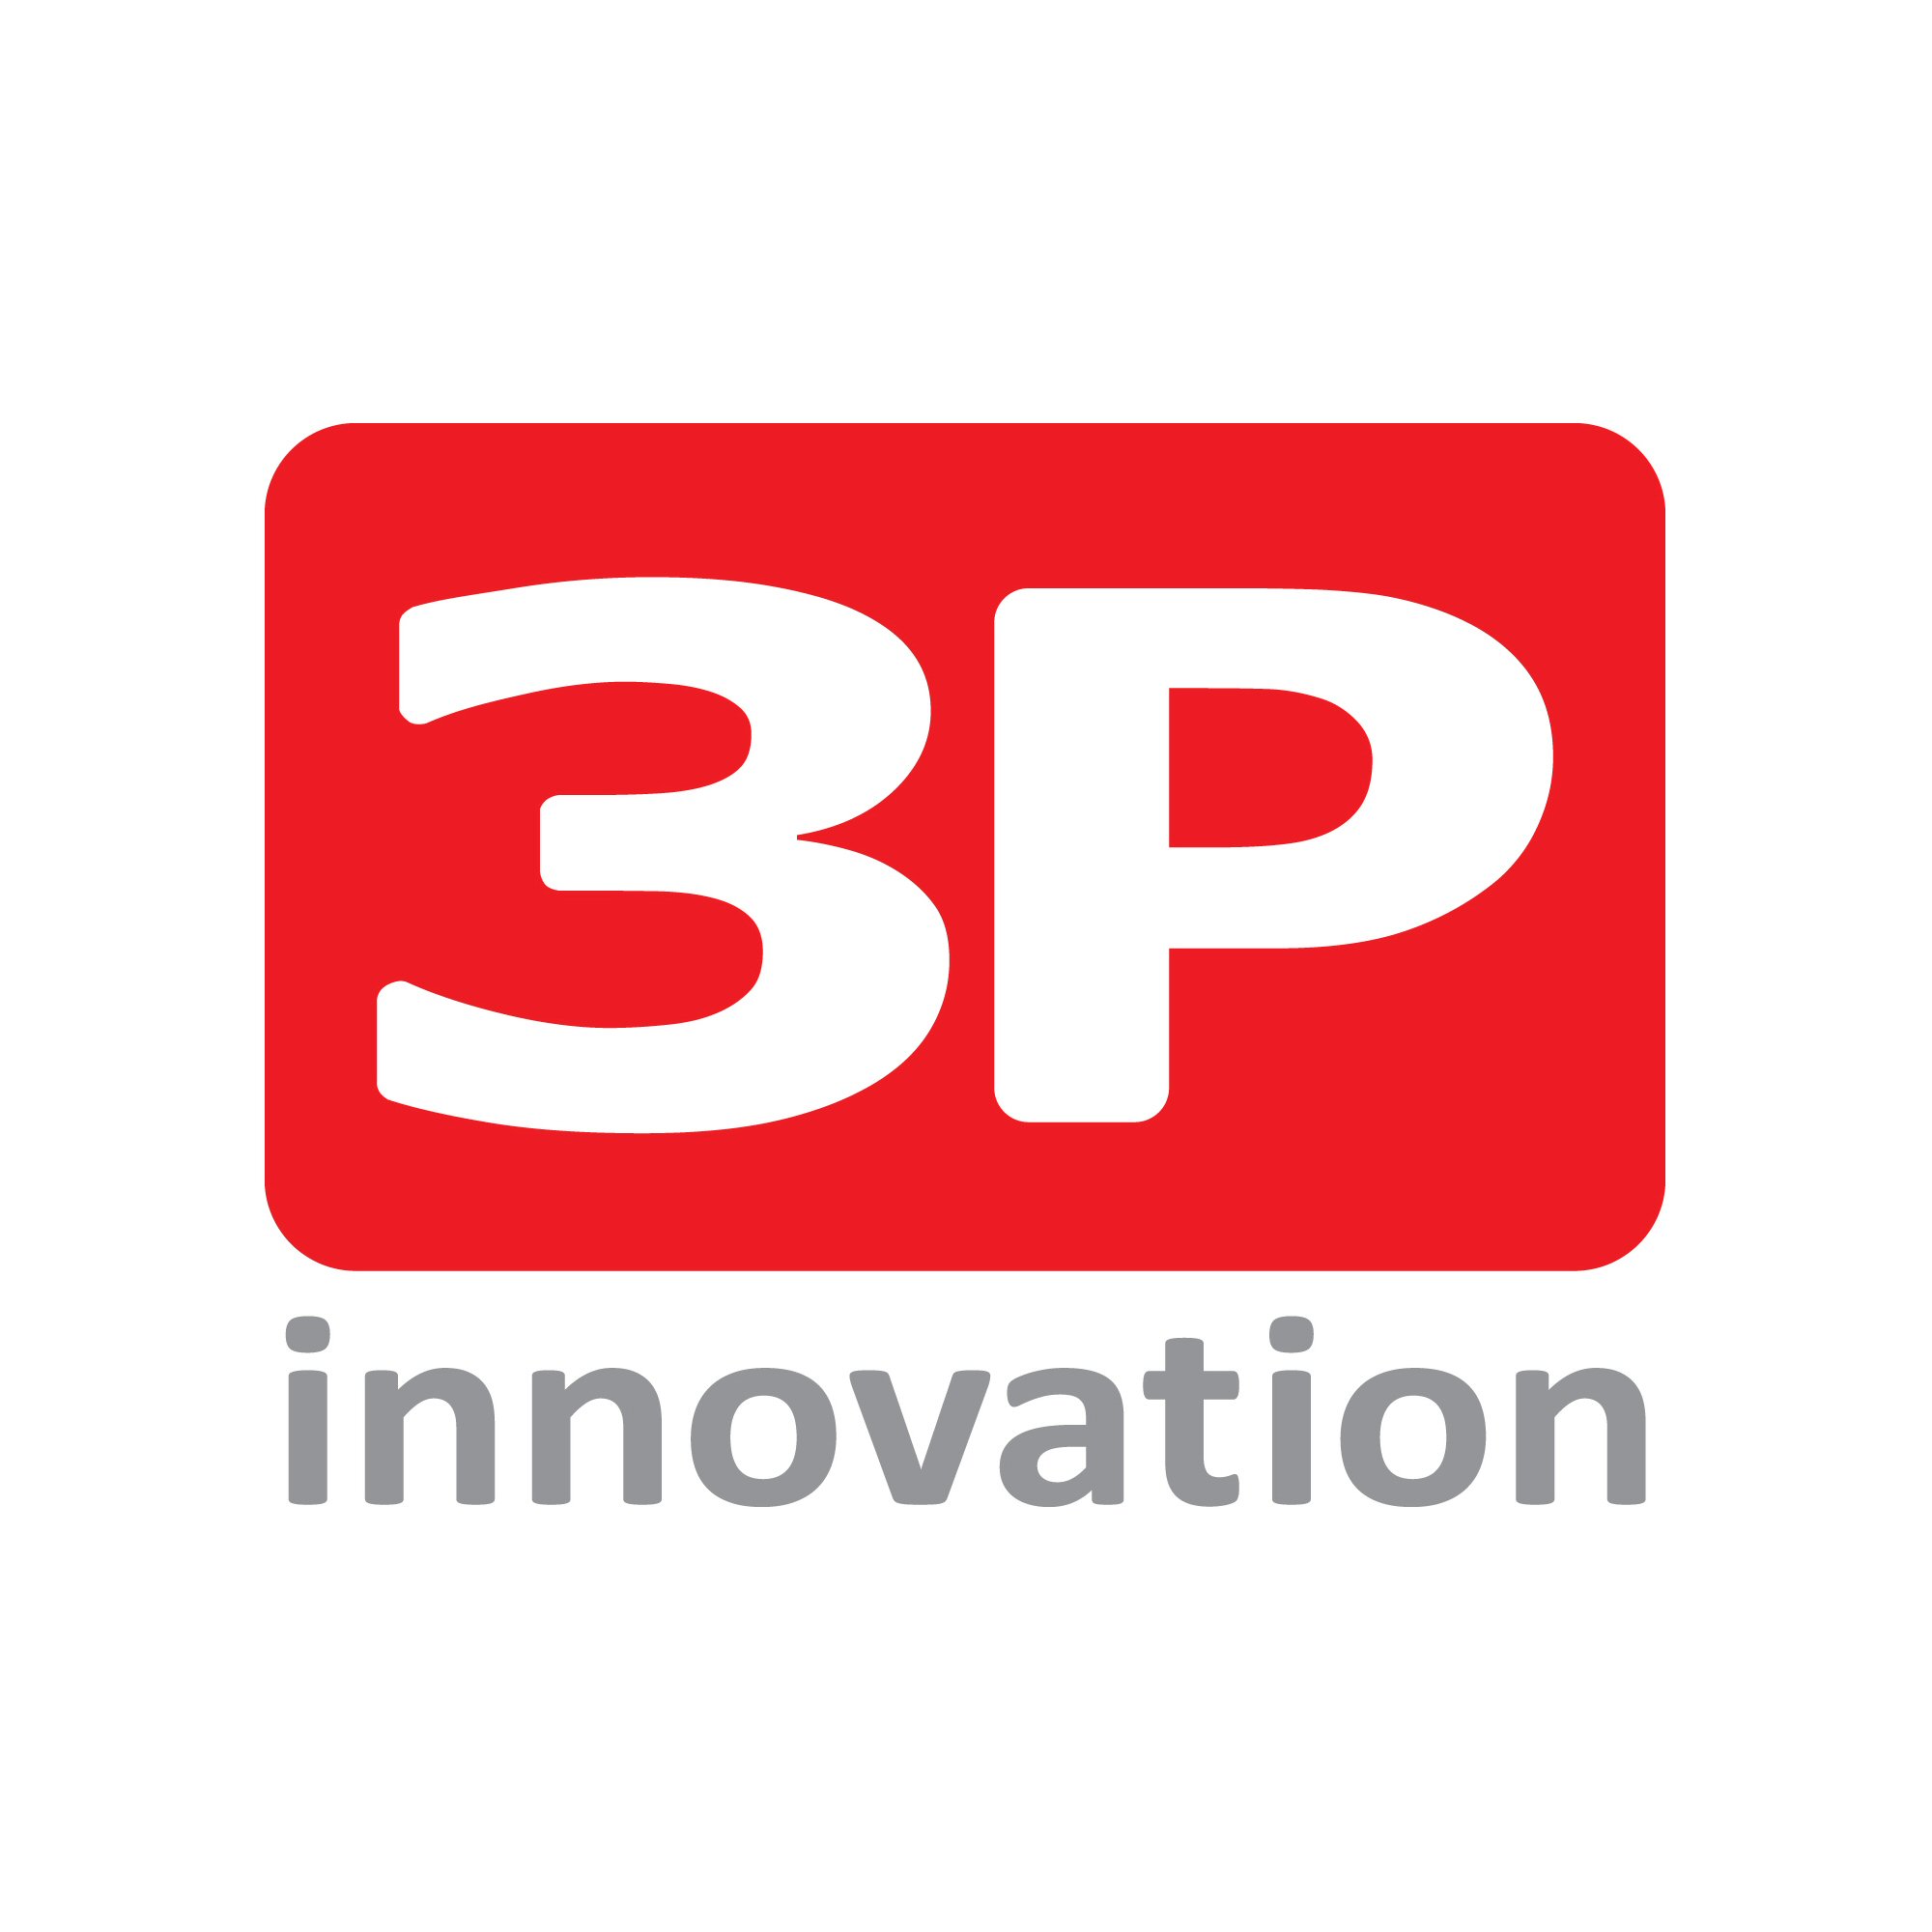 3P innovation